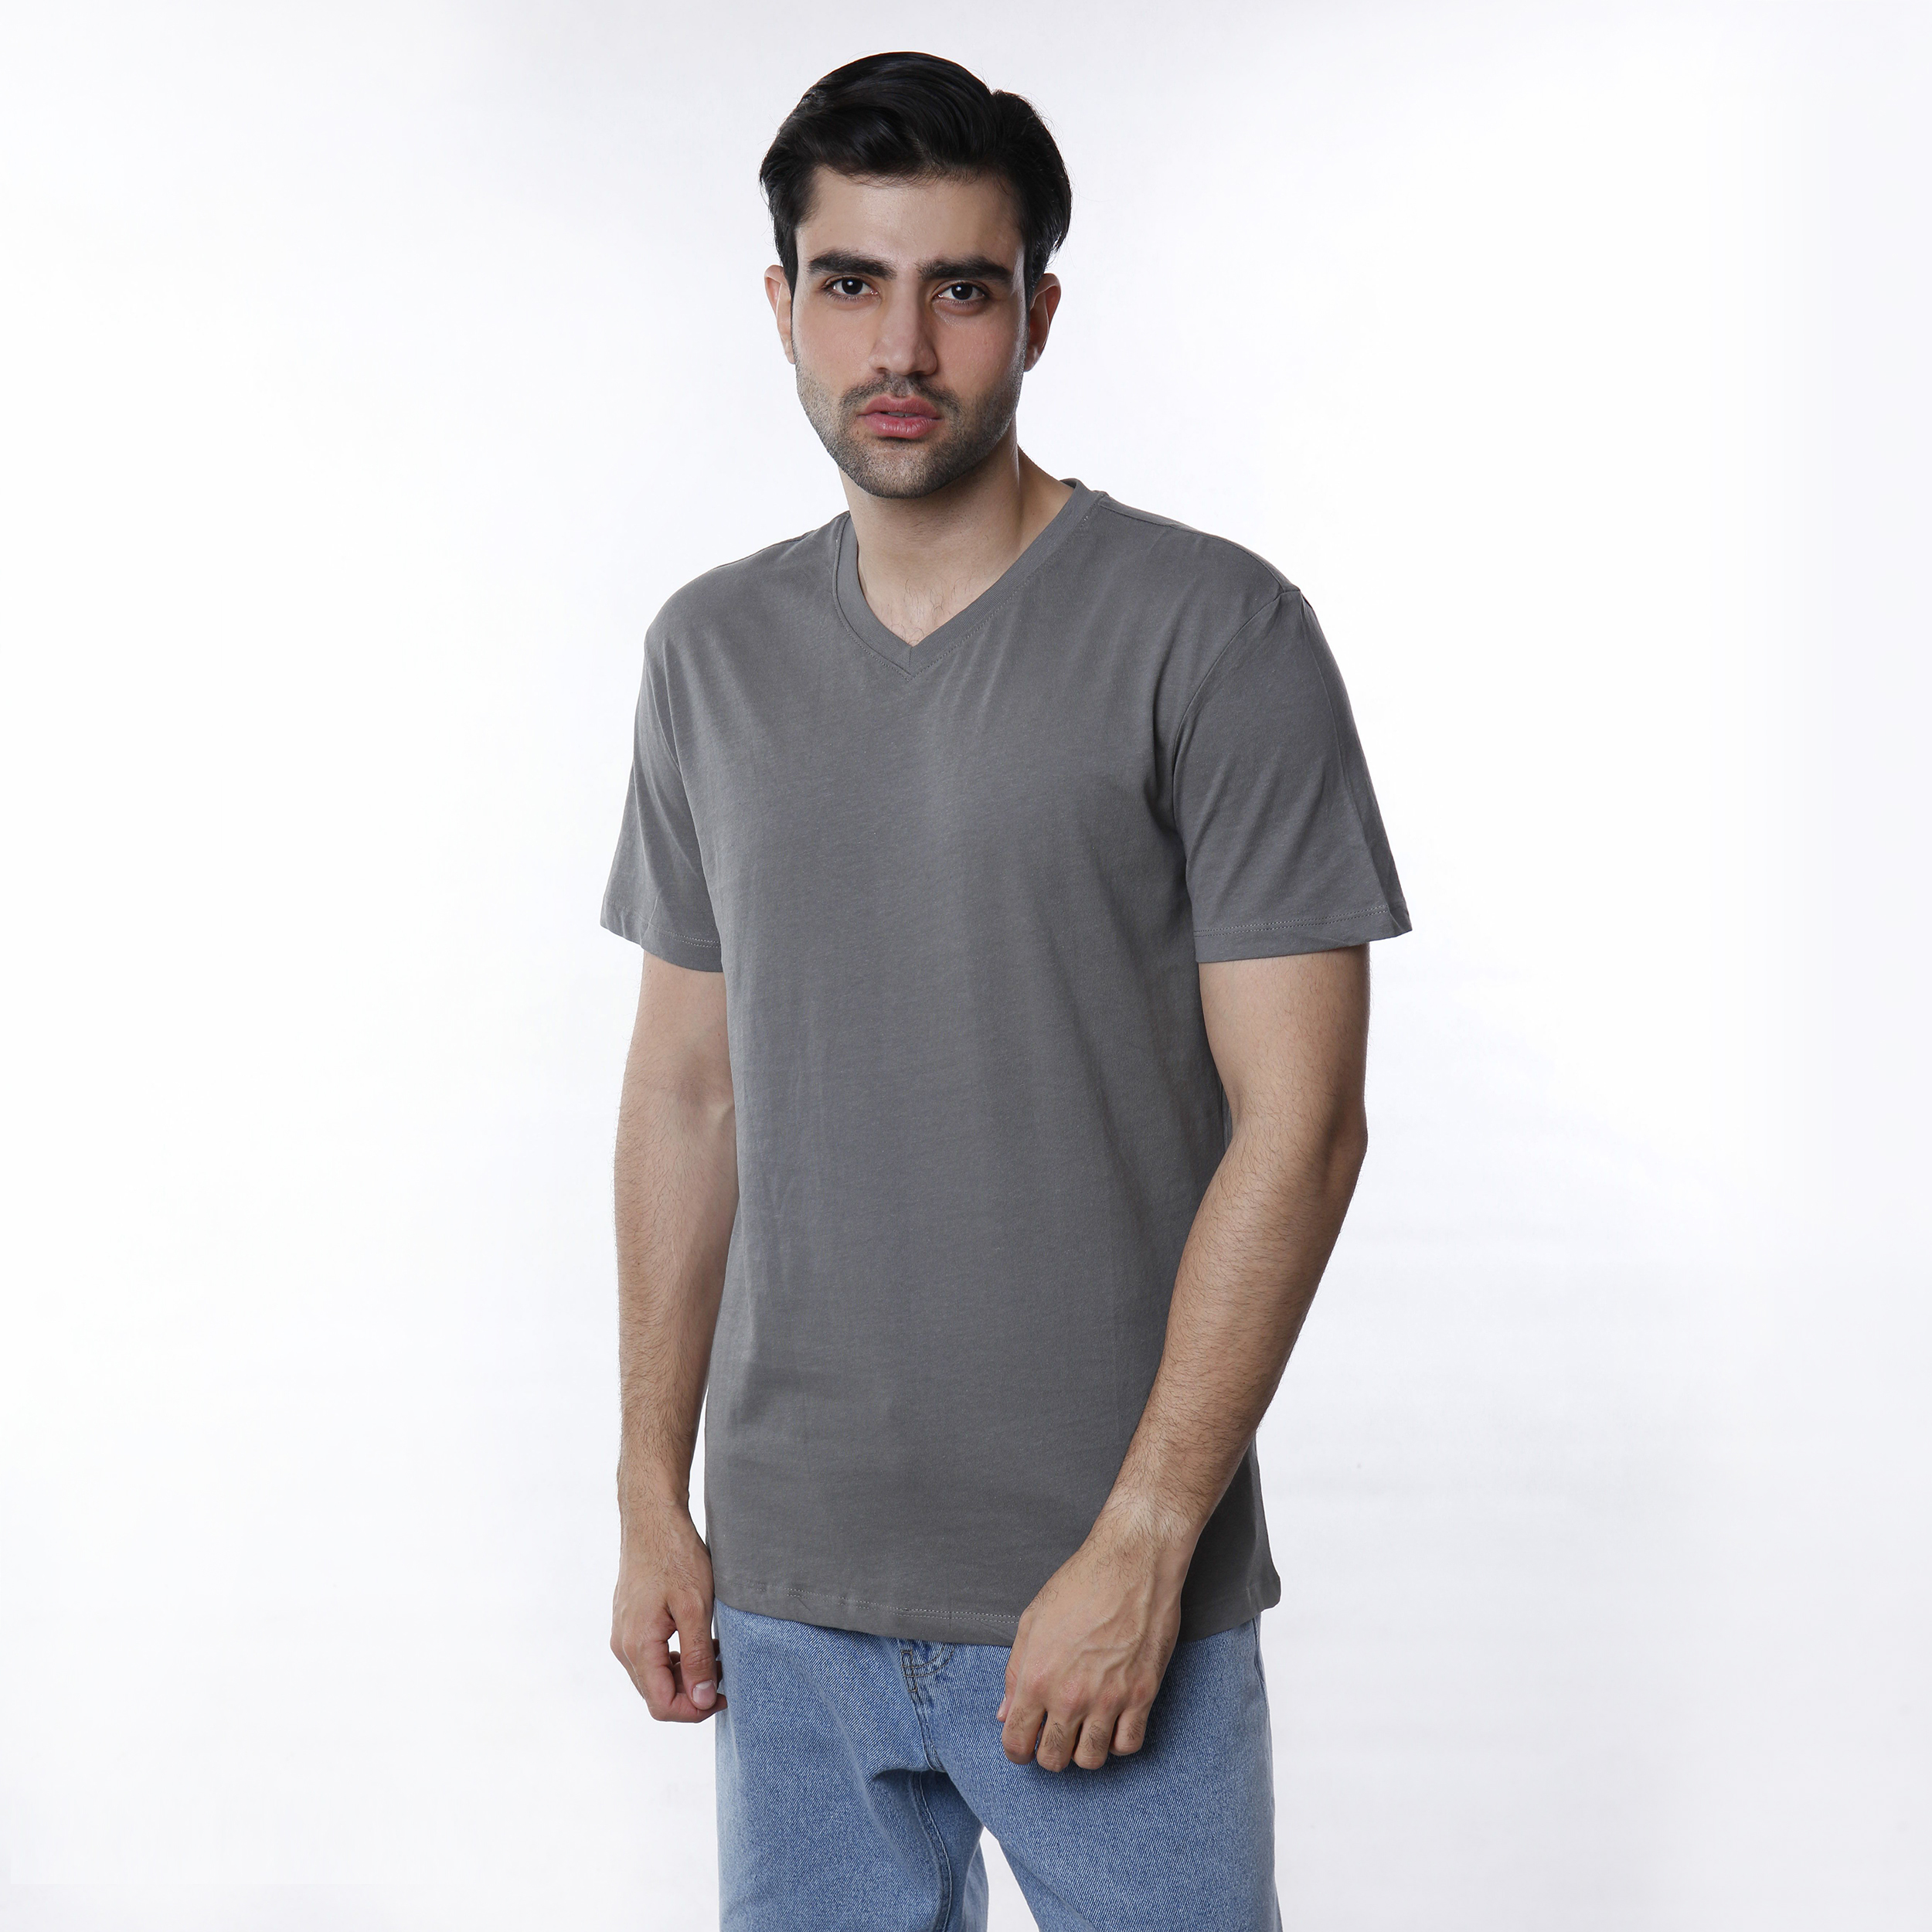 نقد و بررسی تی شرت مردانه کیکی رایکی مدل MBB02989-017 توسط خریداران